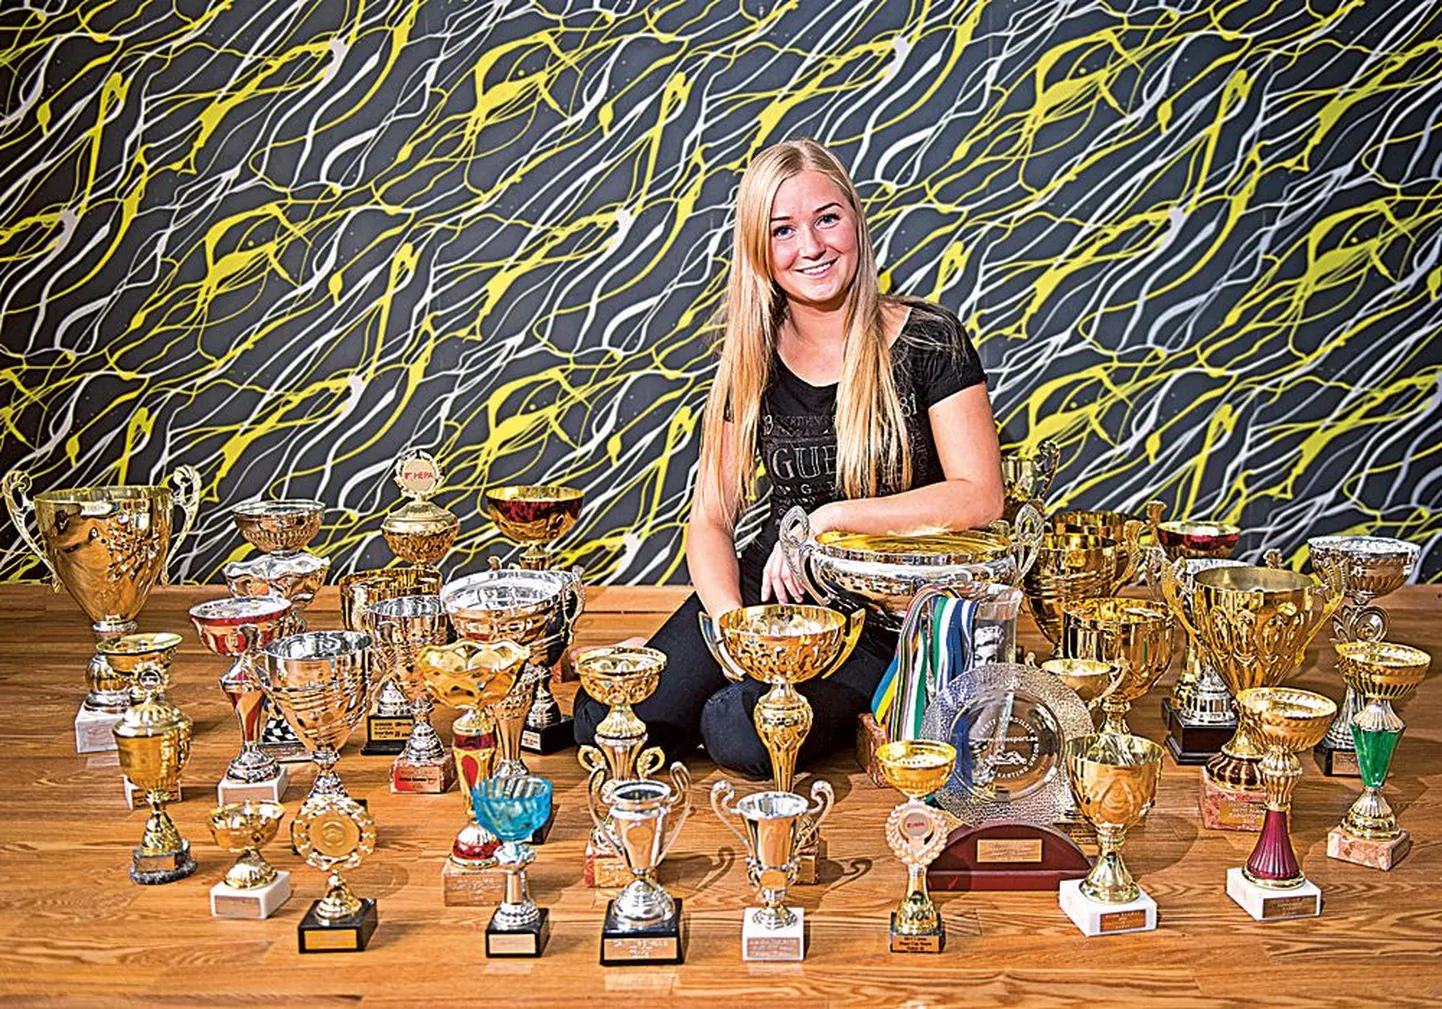 У обожающей скорость Нэнси Ристла немало различных кубков, которыми отмечены ее победы на соревнованиях. Самой ценной наградой пока является недавно завоеванный титул чемпиона Эстонии.